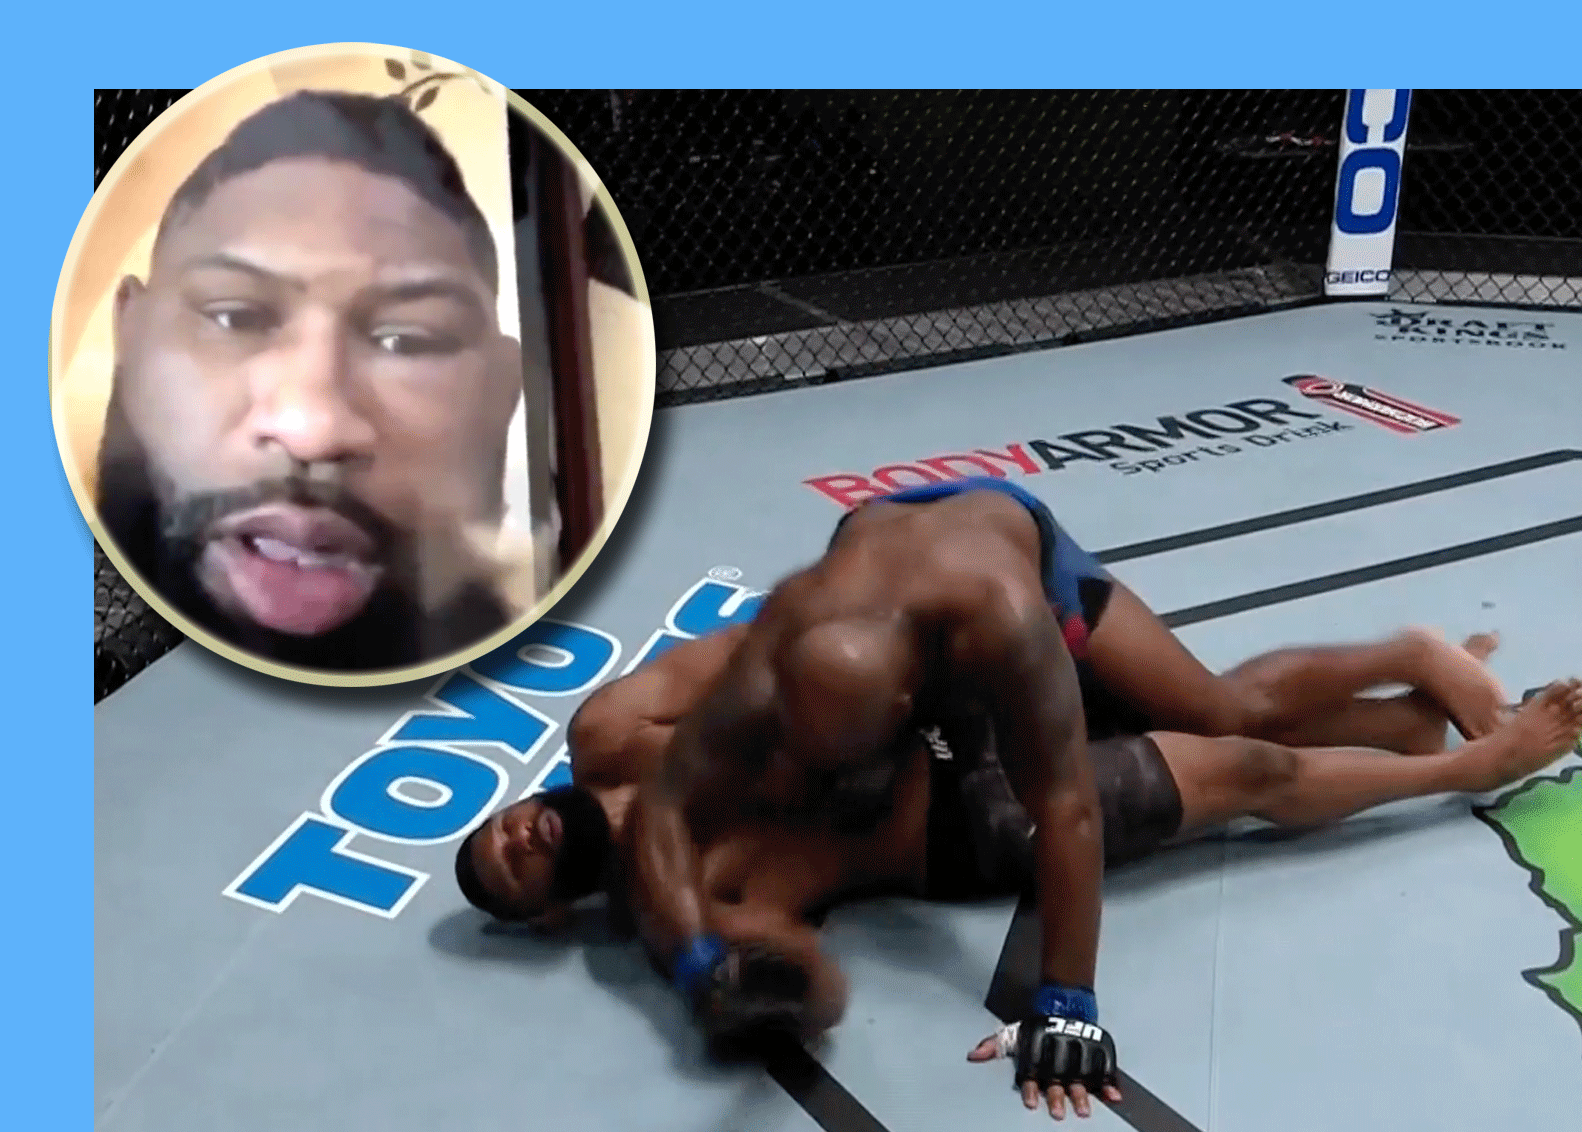 Flapdrol valt knock-out geslagen MMA-vechter lastig (video)